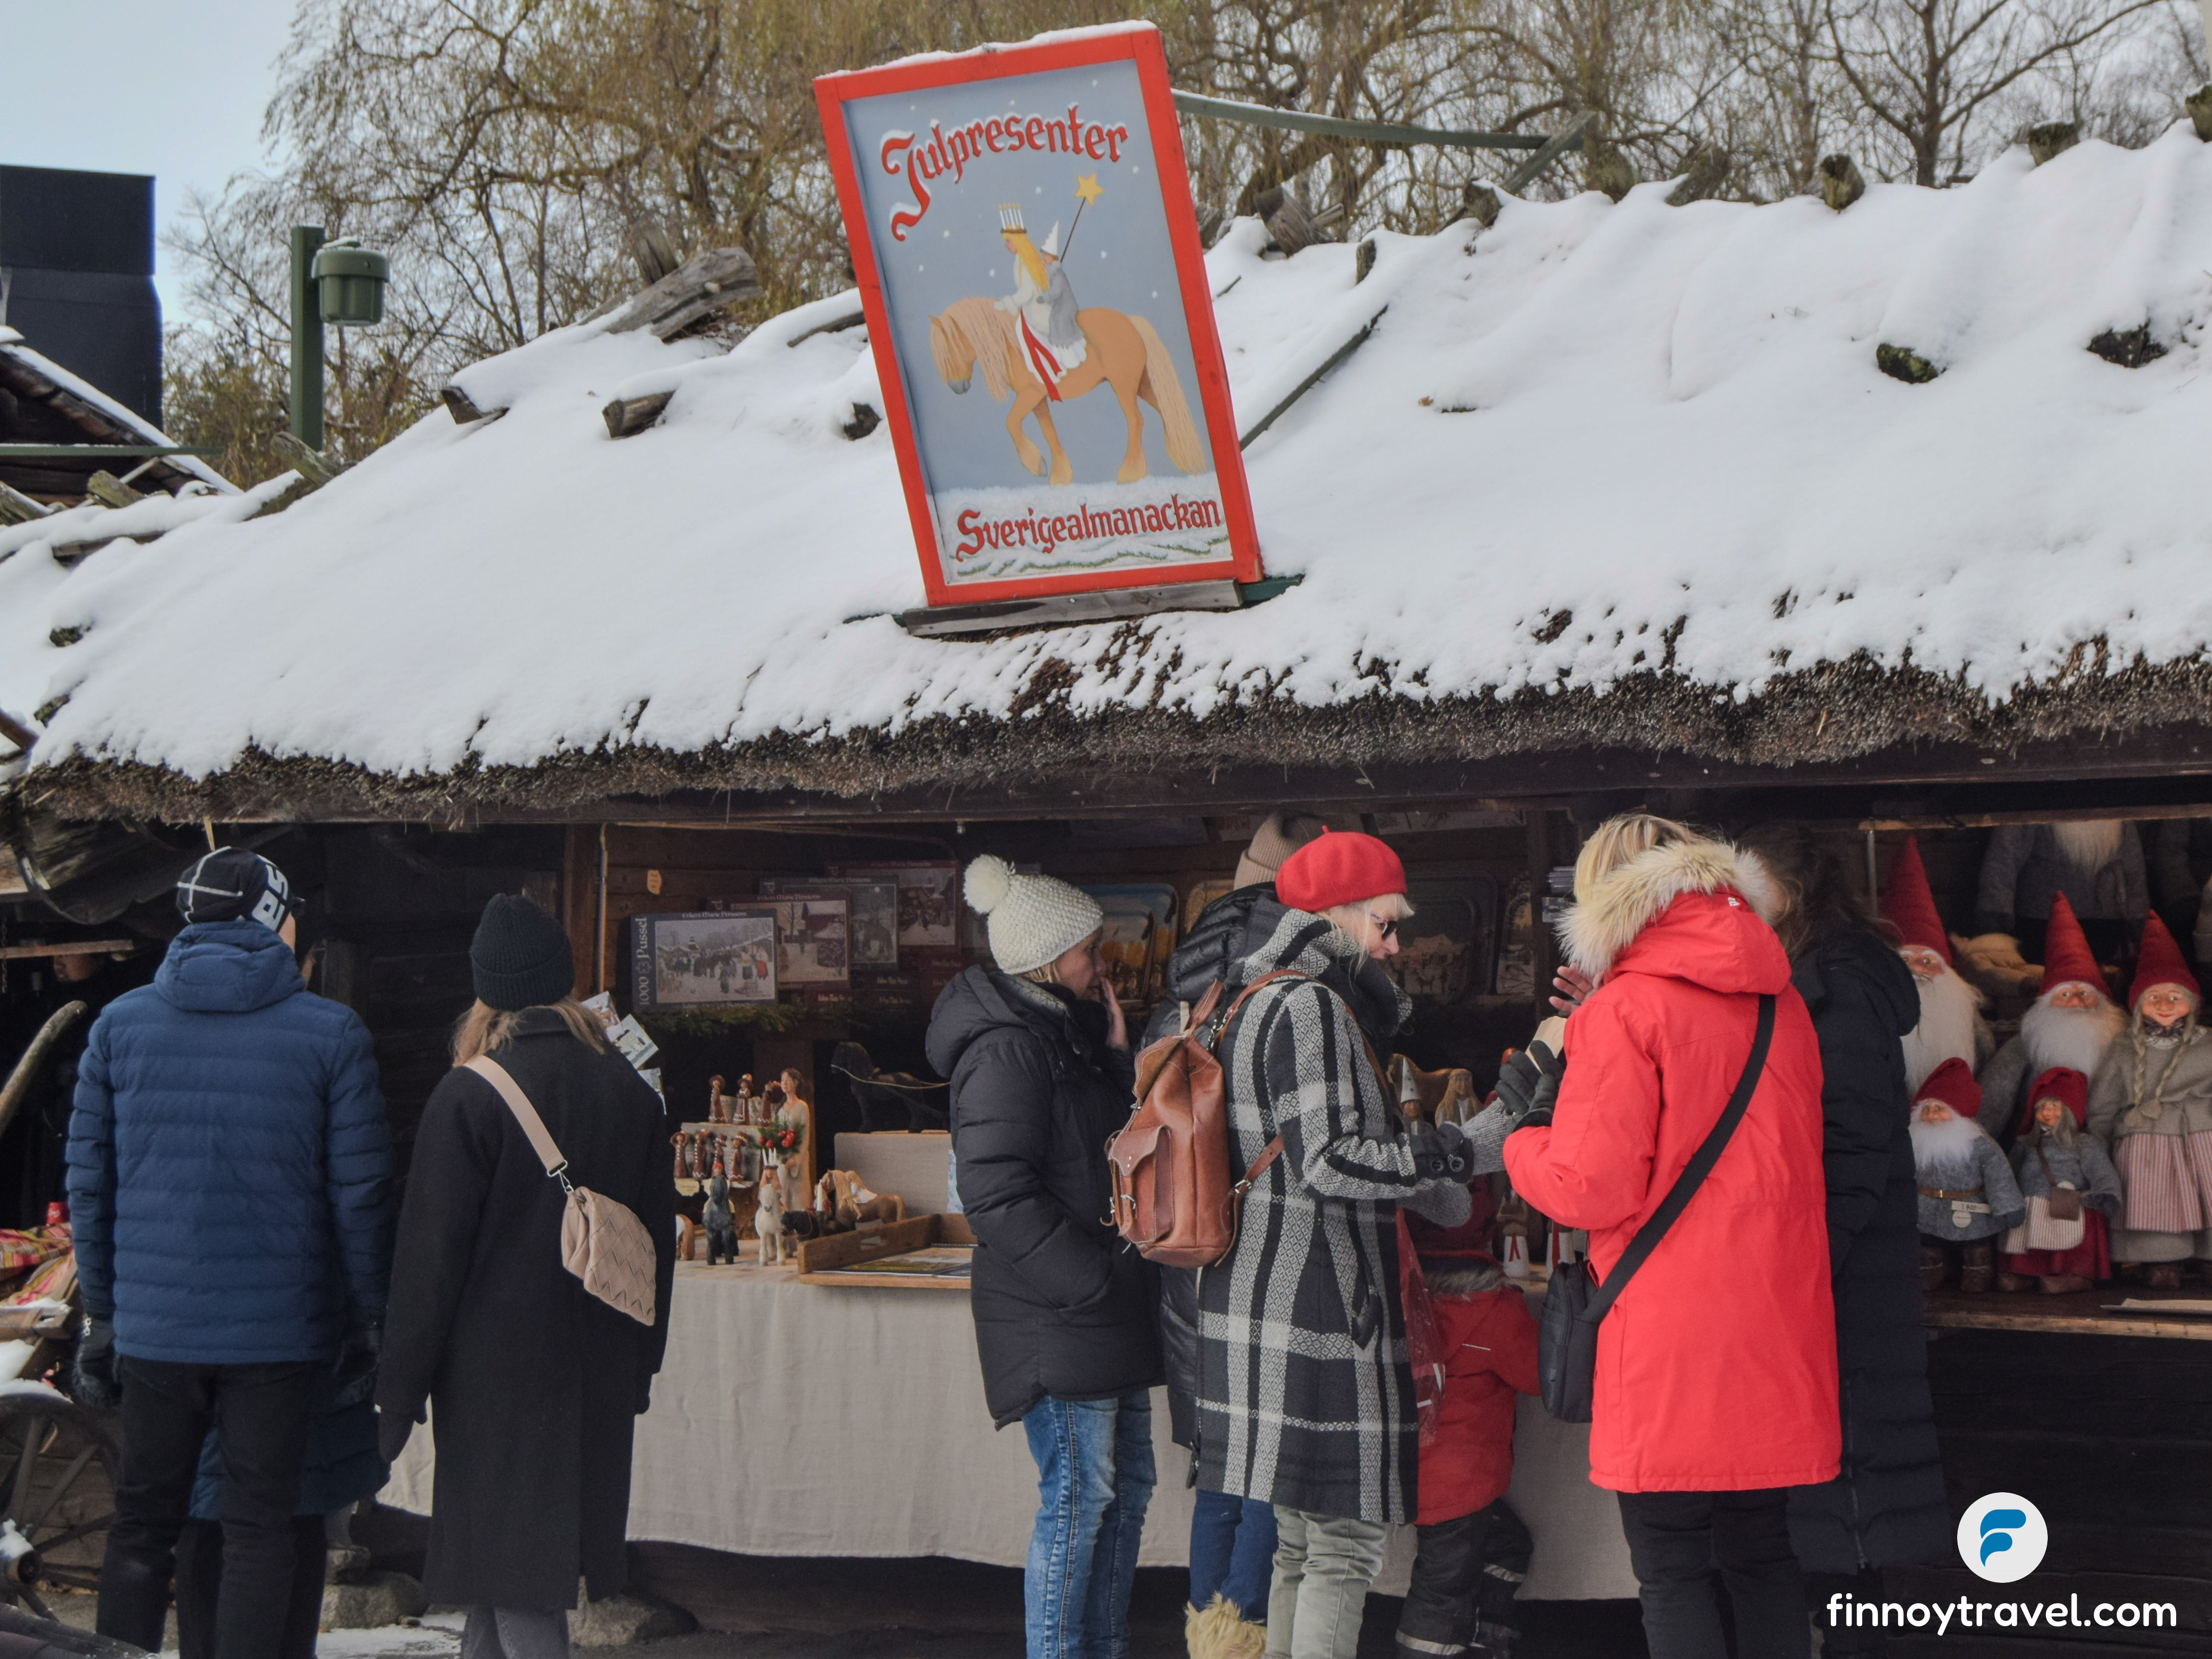 market_stall_selling_Christmas_gift_items_Skansen_Christmas_market_Stockholm_Sweden.jpg